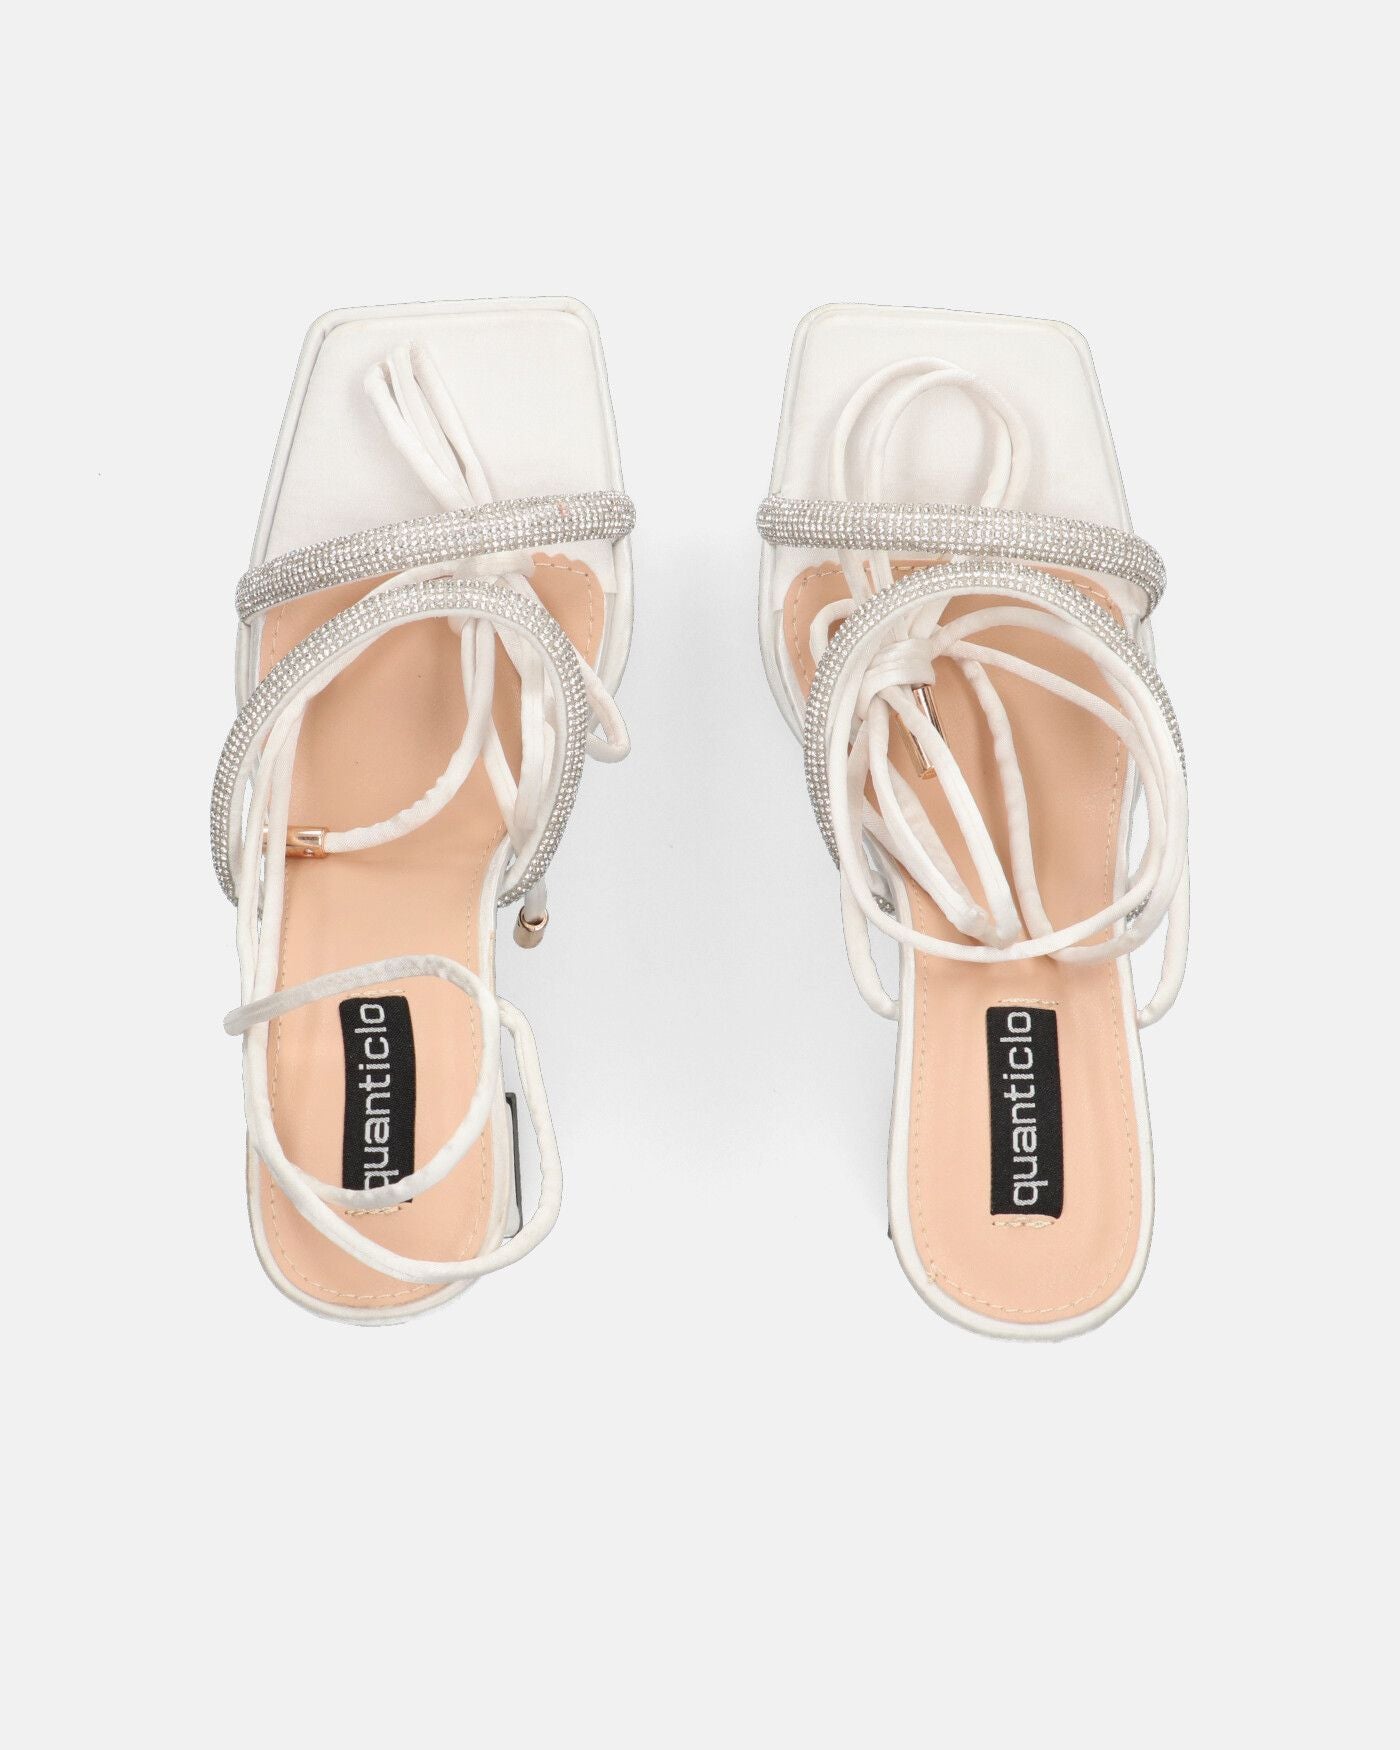 BIRGIT - white satin sandals with gems